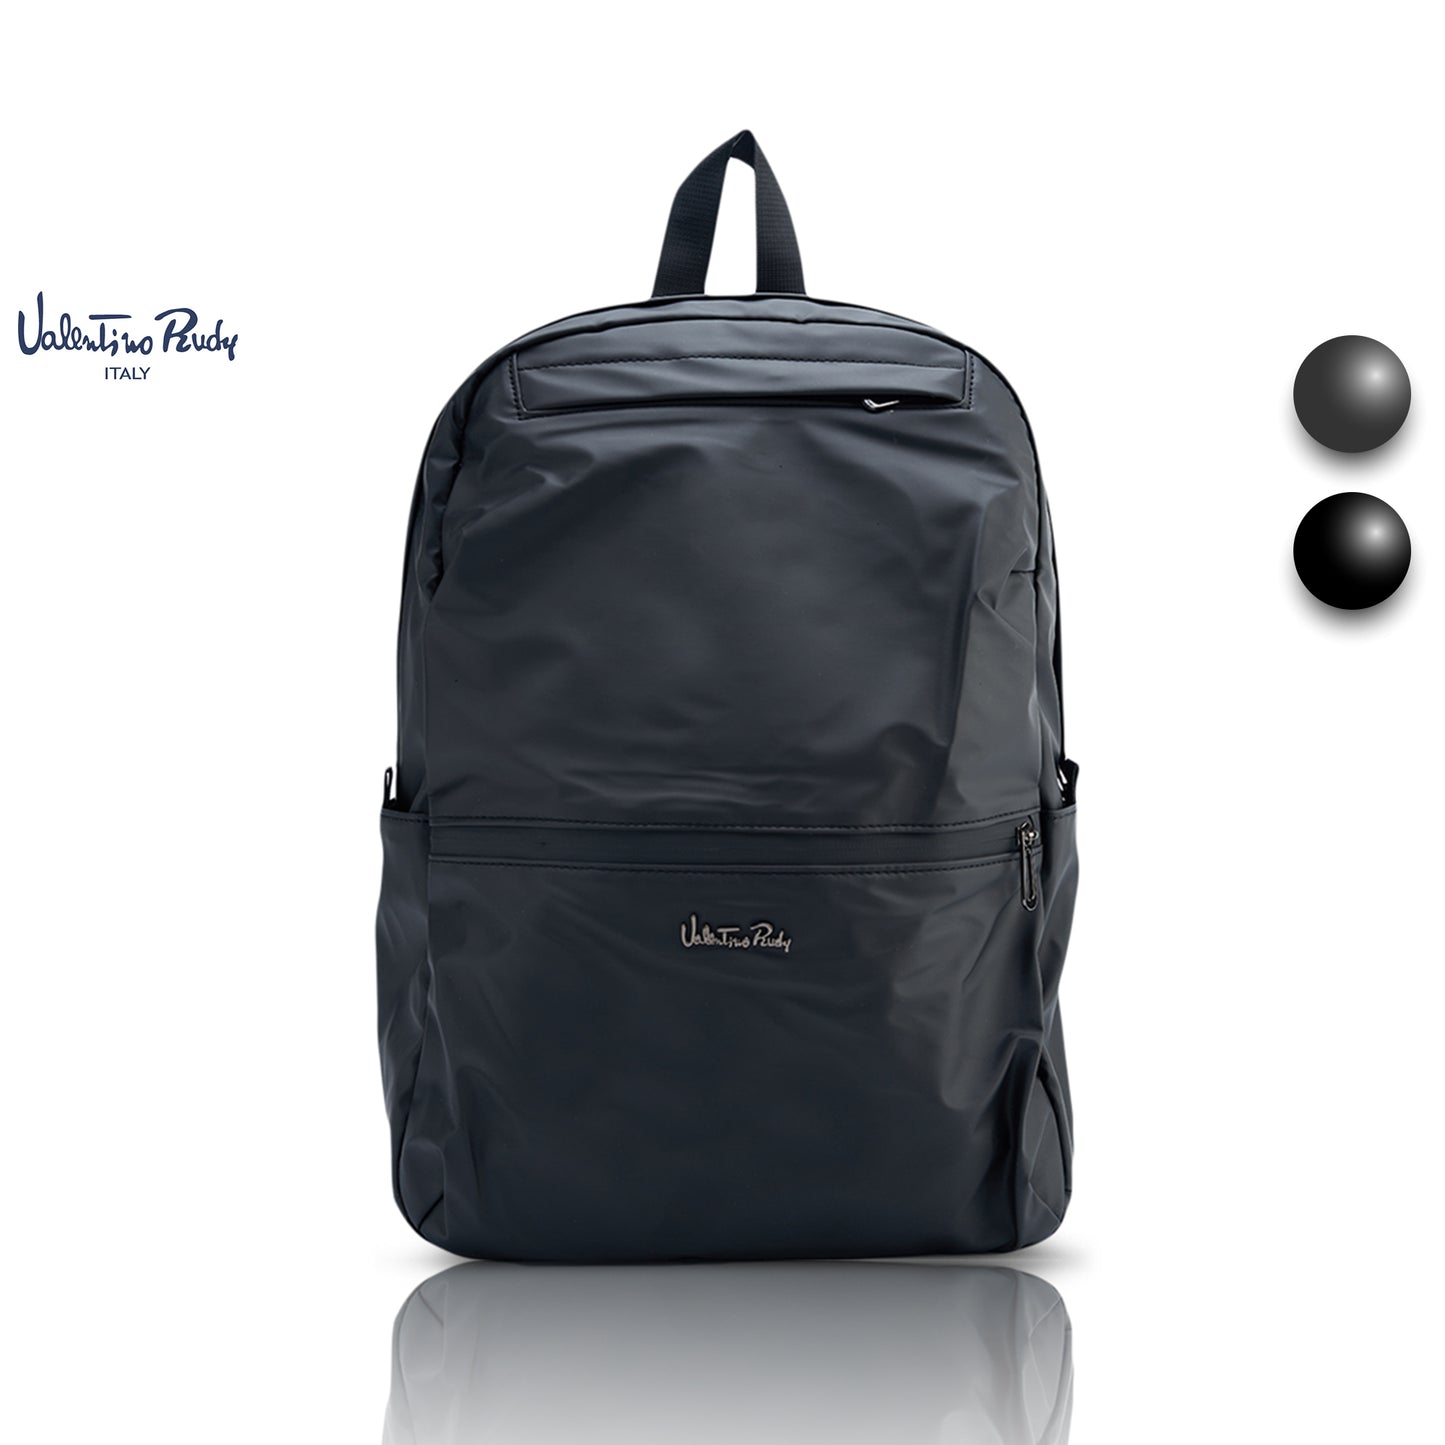 Valentino Rudy Italy Men's Nylon Backpack